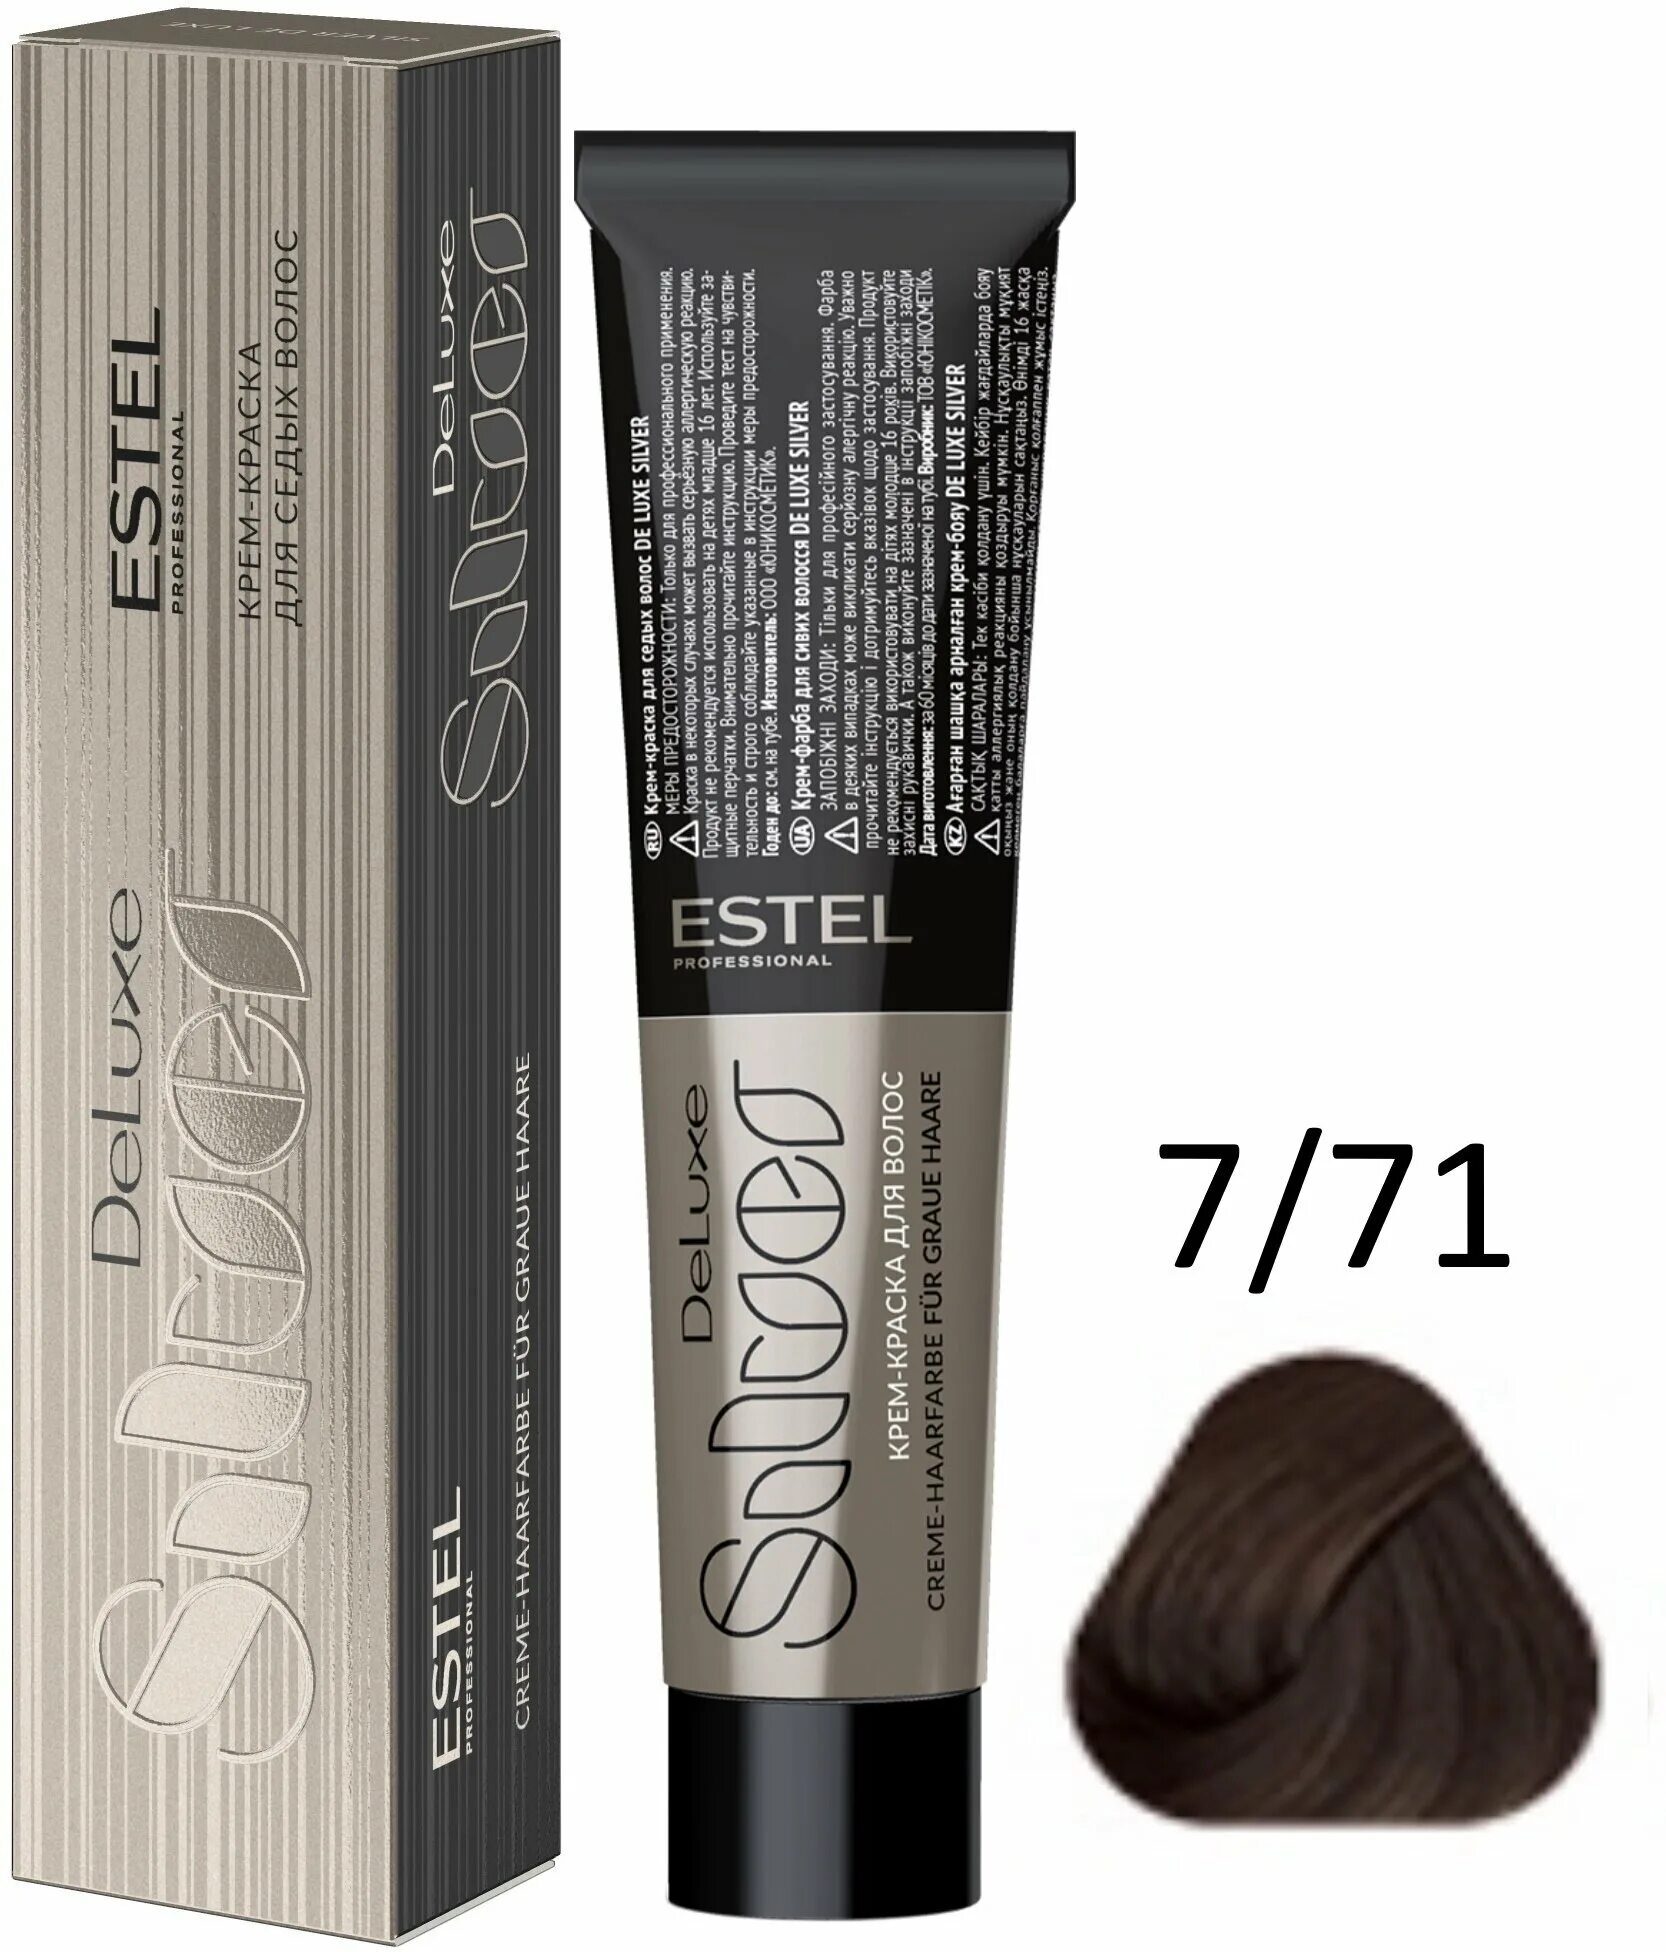 Estel professional краска для волос de Luxe Silver 6/7. Estel Deluxe Silver 5/7. Estel professional de Luxe Silver крем-краска для седых волос, 60 мл. Краска для седых волос Estel Deluxe Silver.